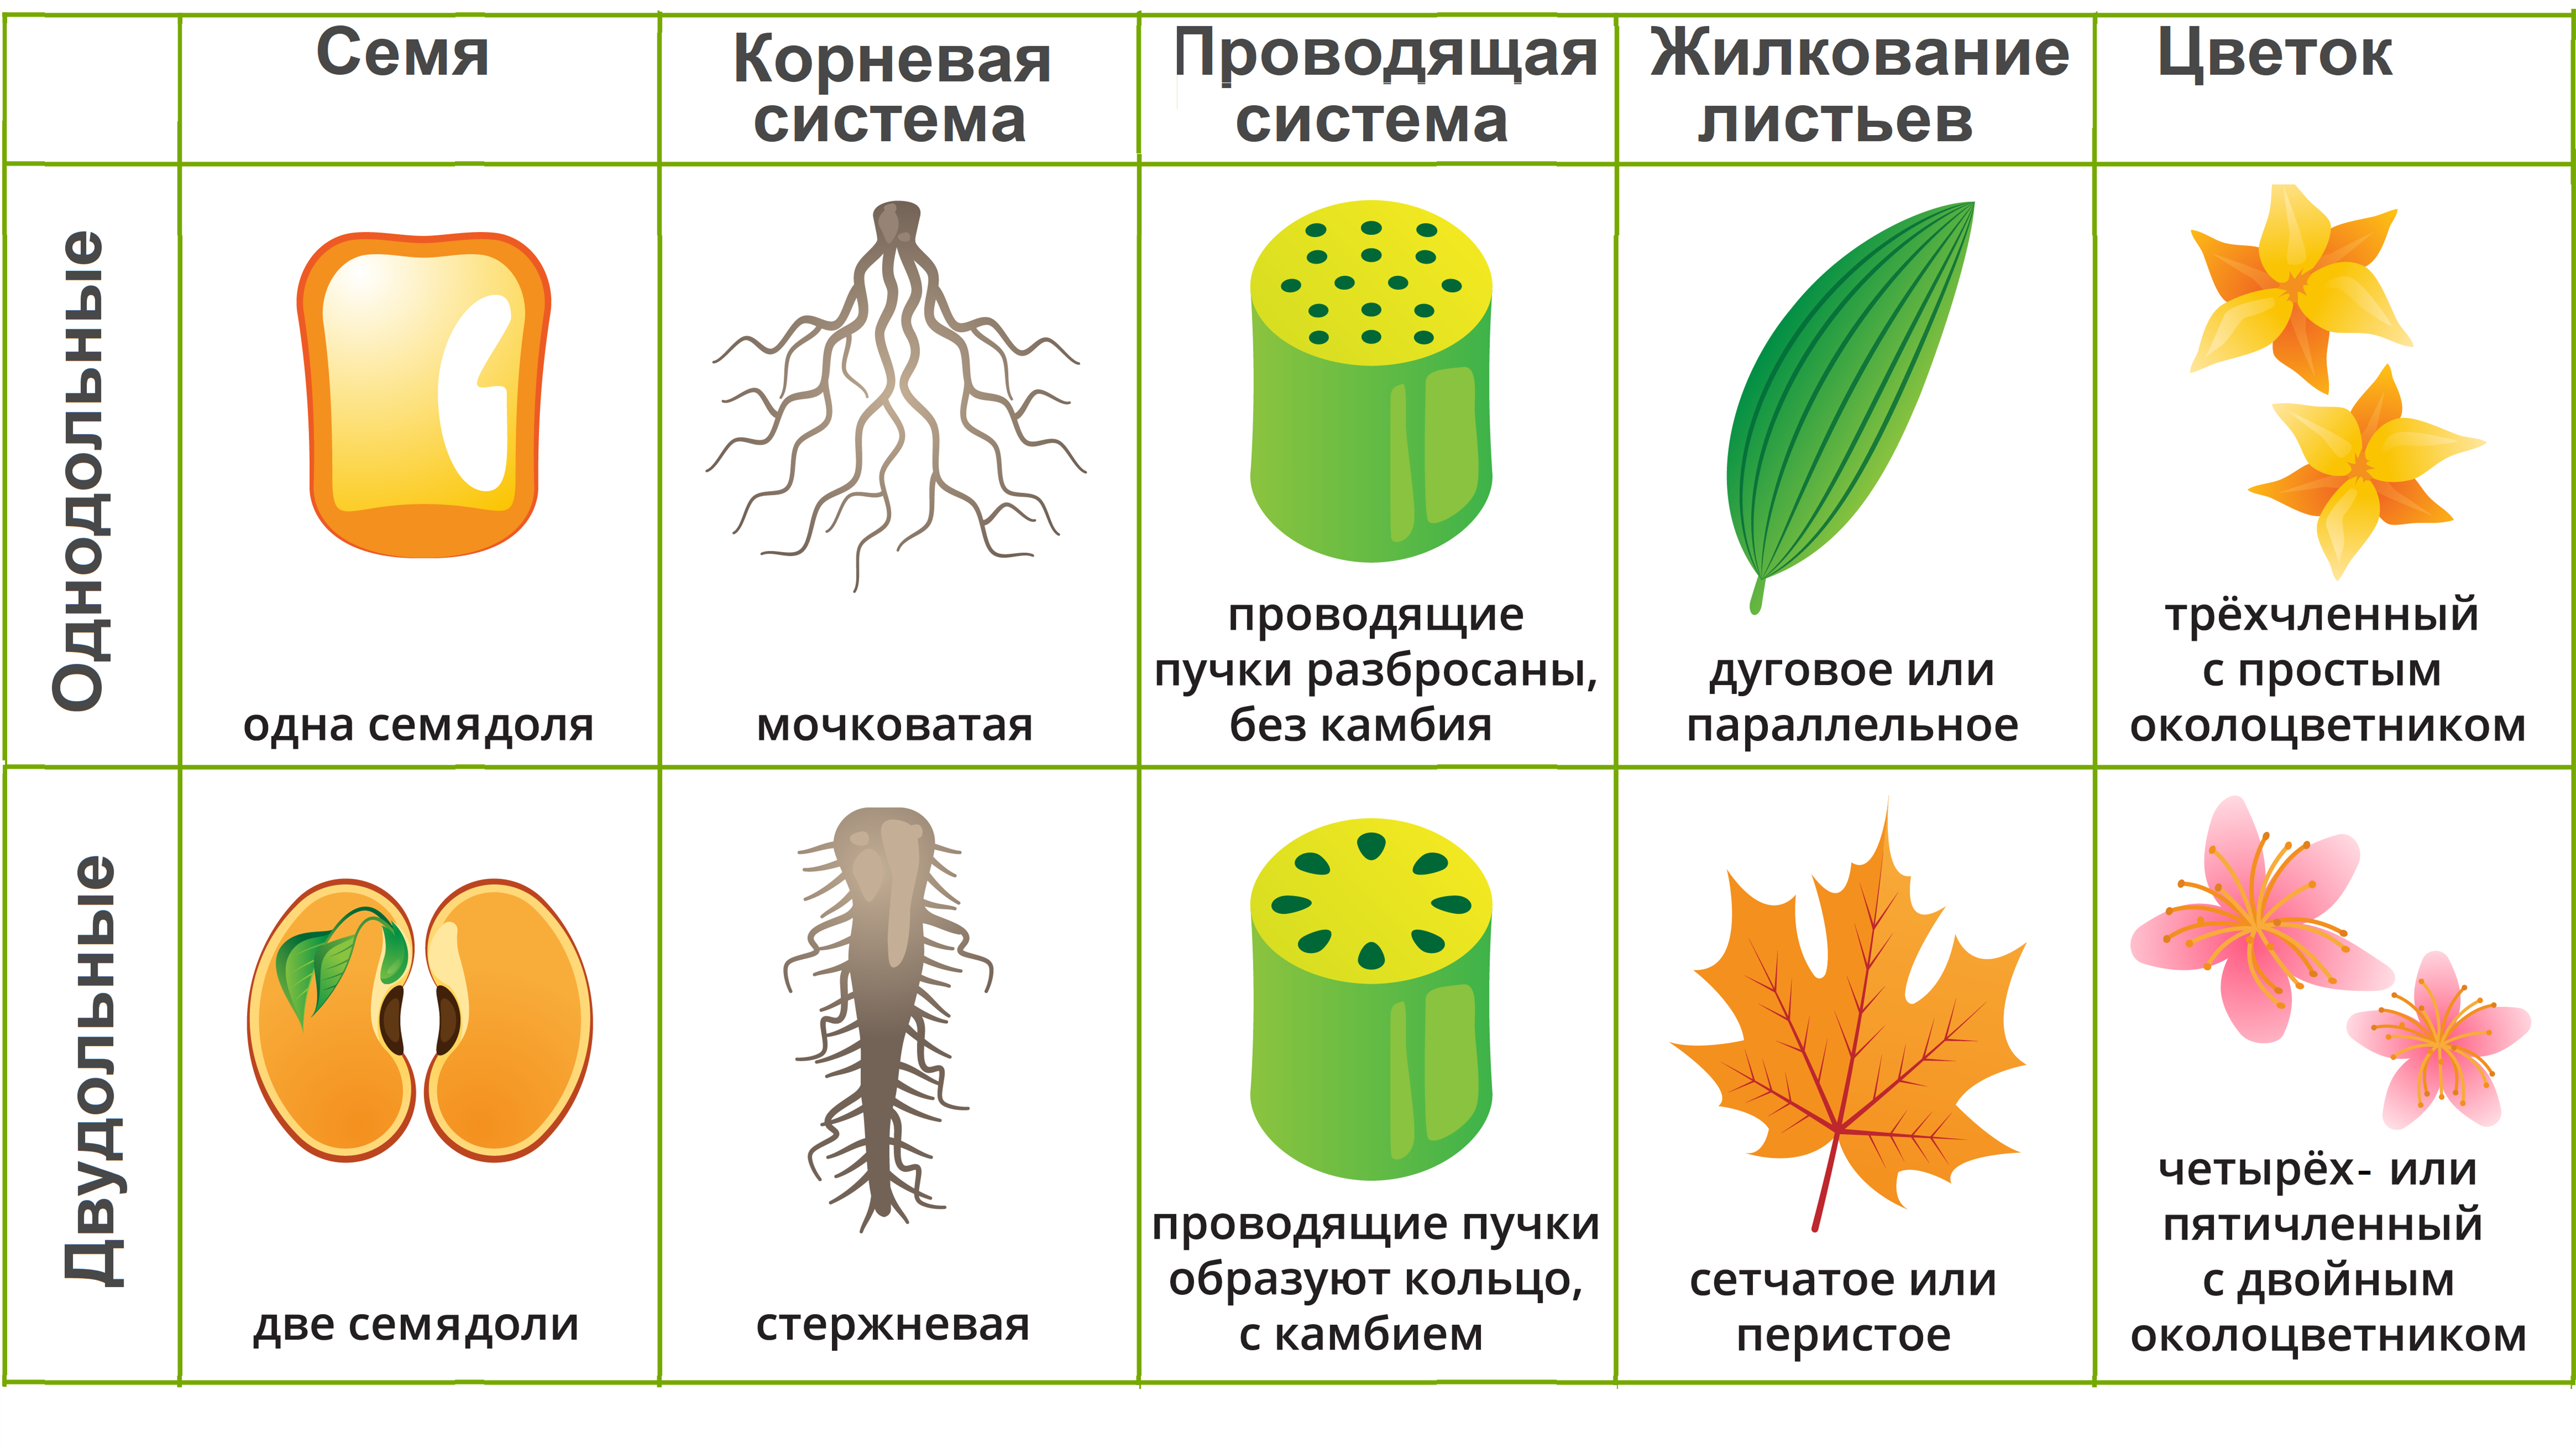 Покрытосеменные растения примеры 6 класс